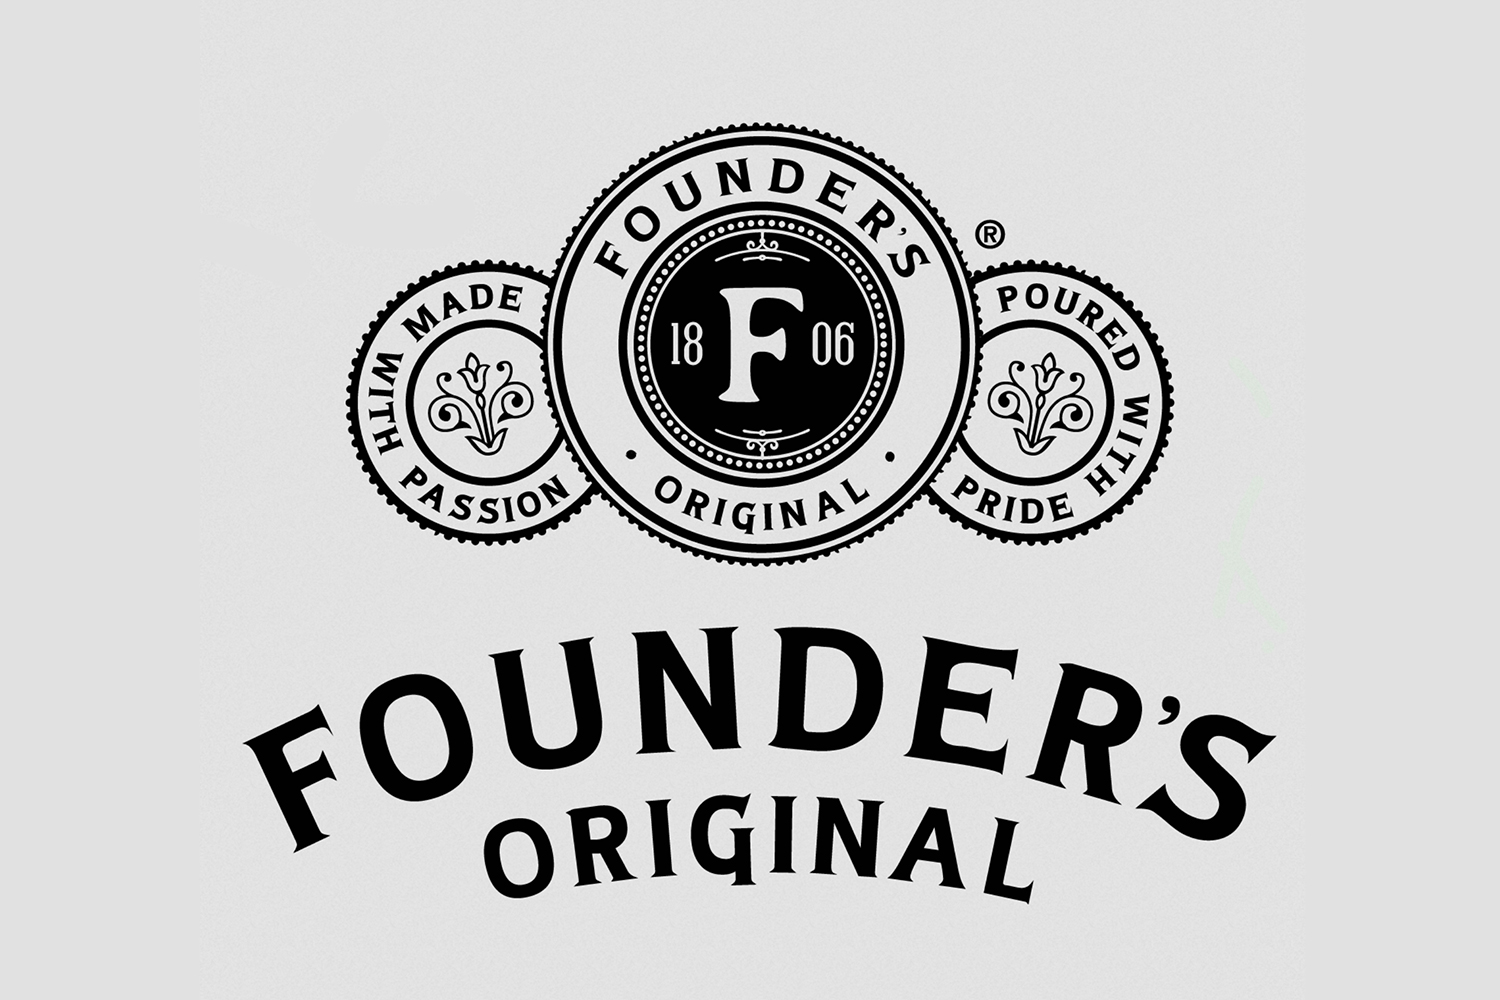 founder's original